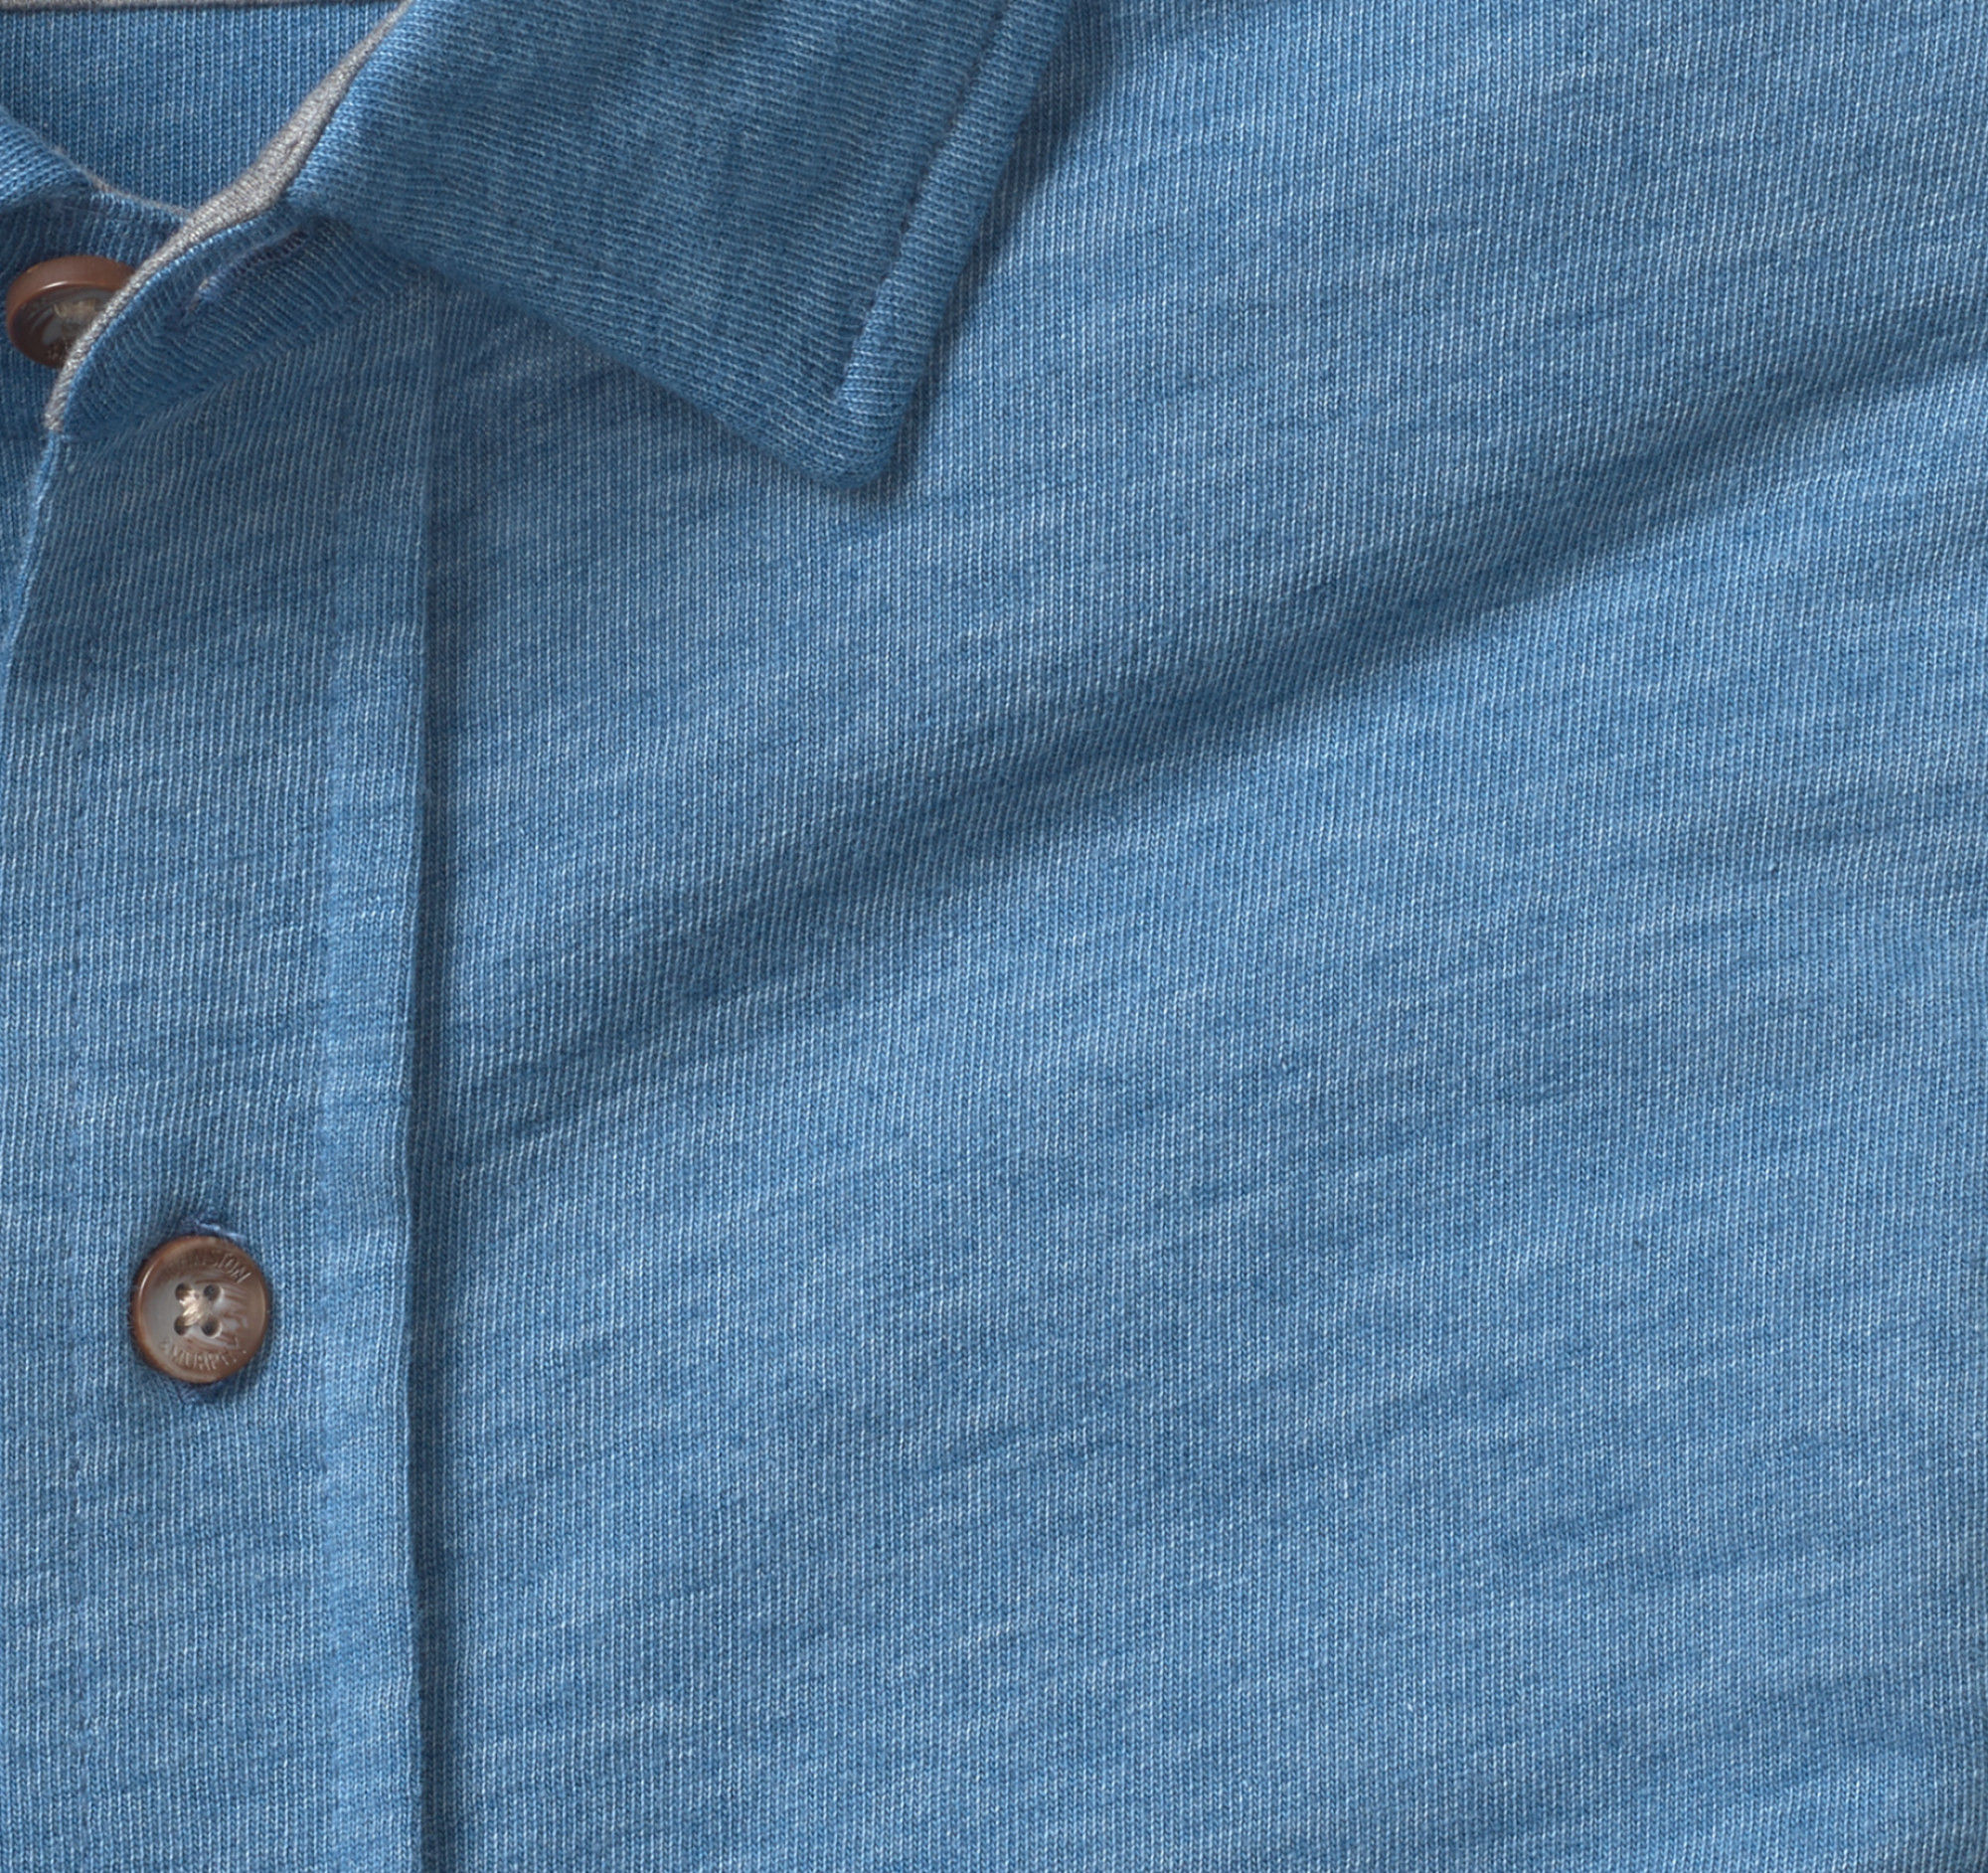 XC Flex® Stretch Indigo Long-Sleeve Shirt image number null